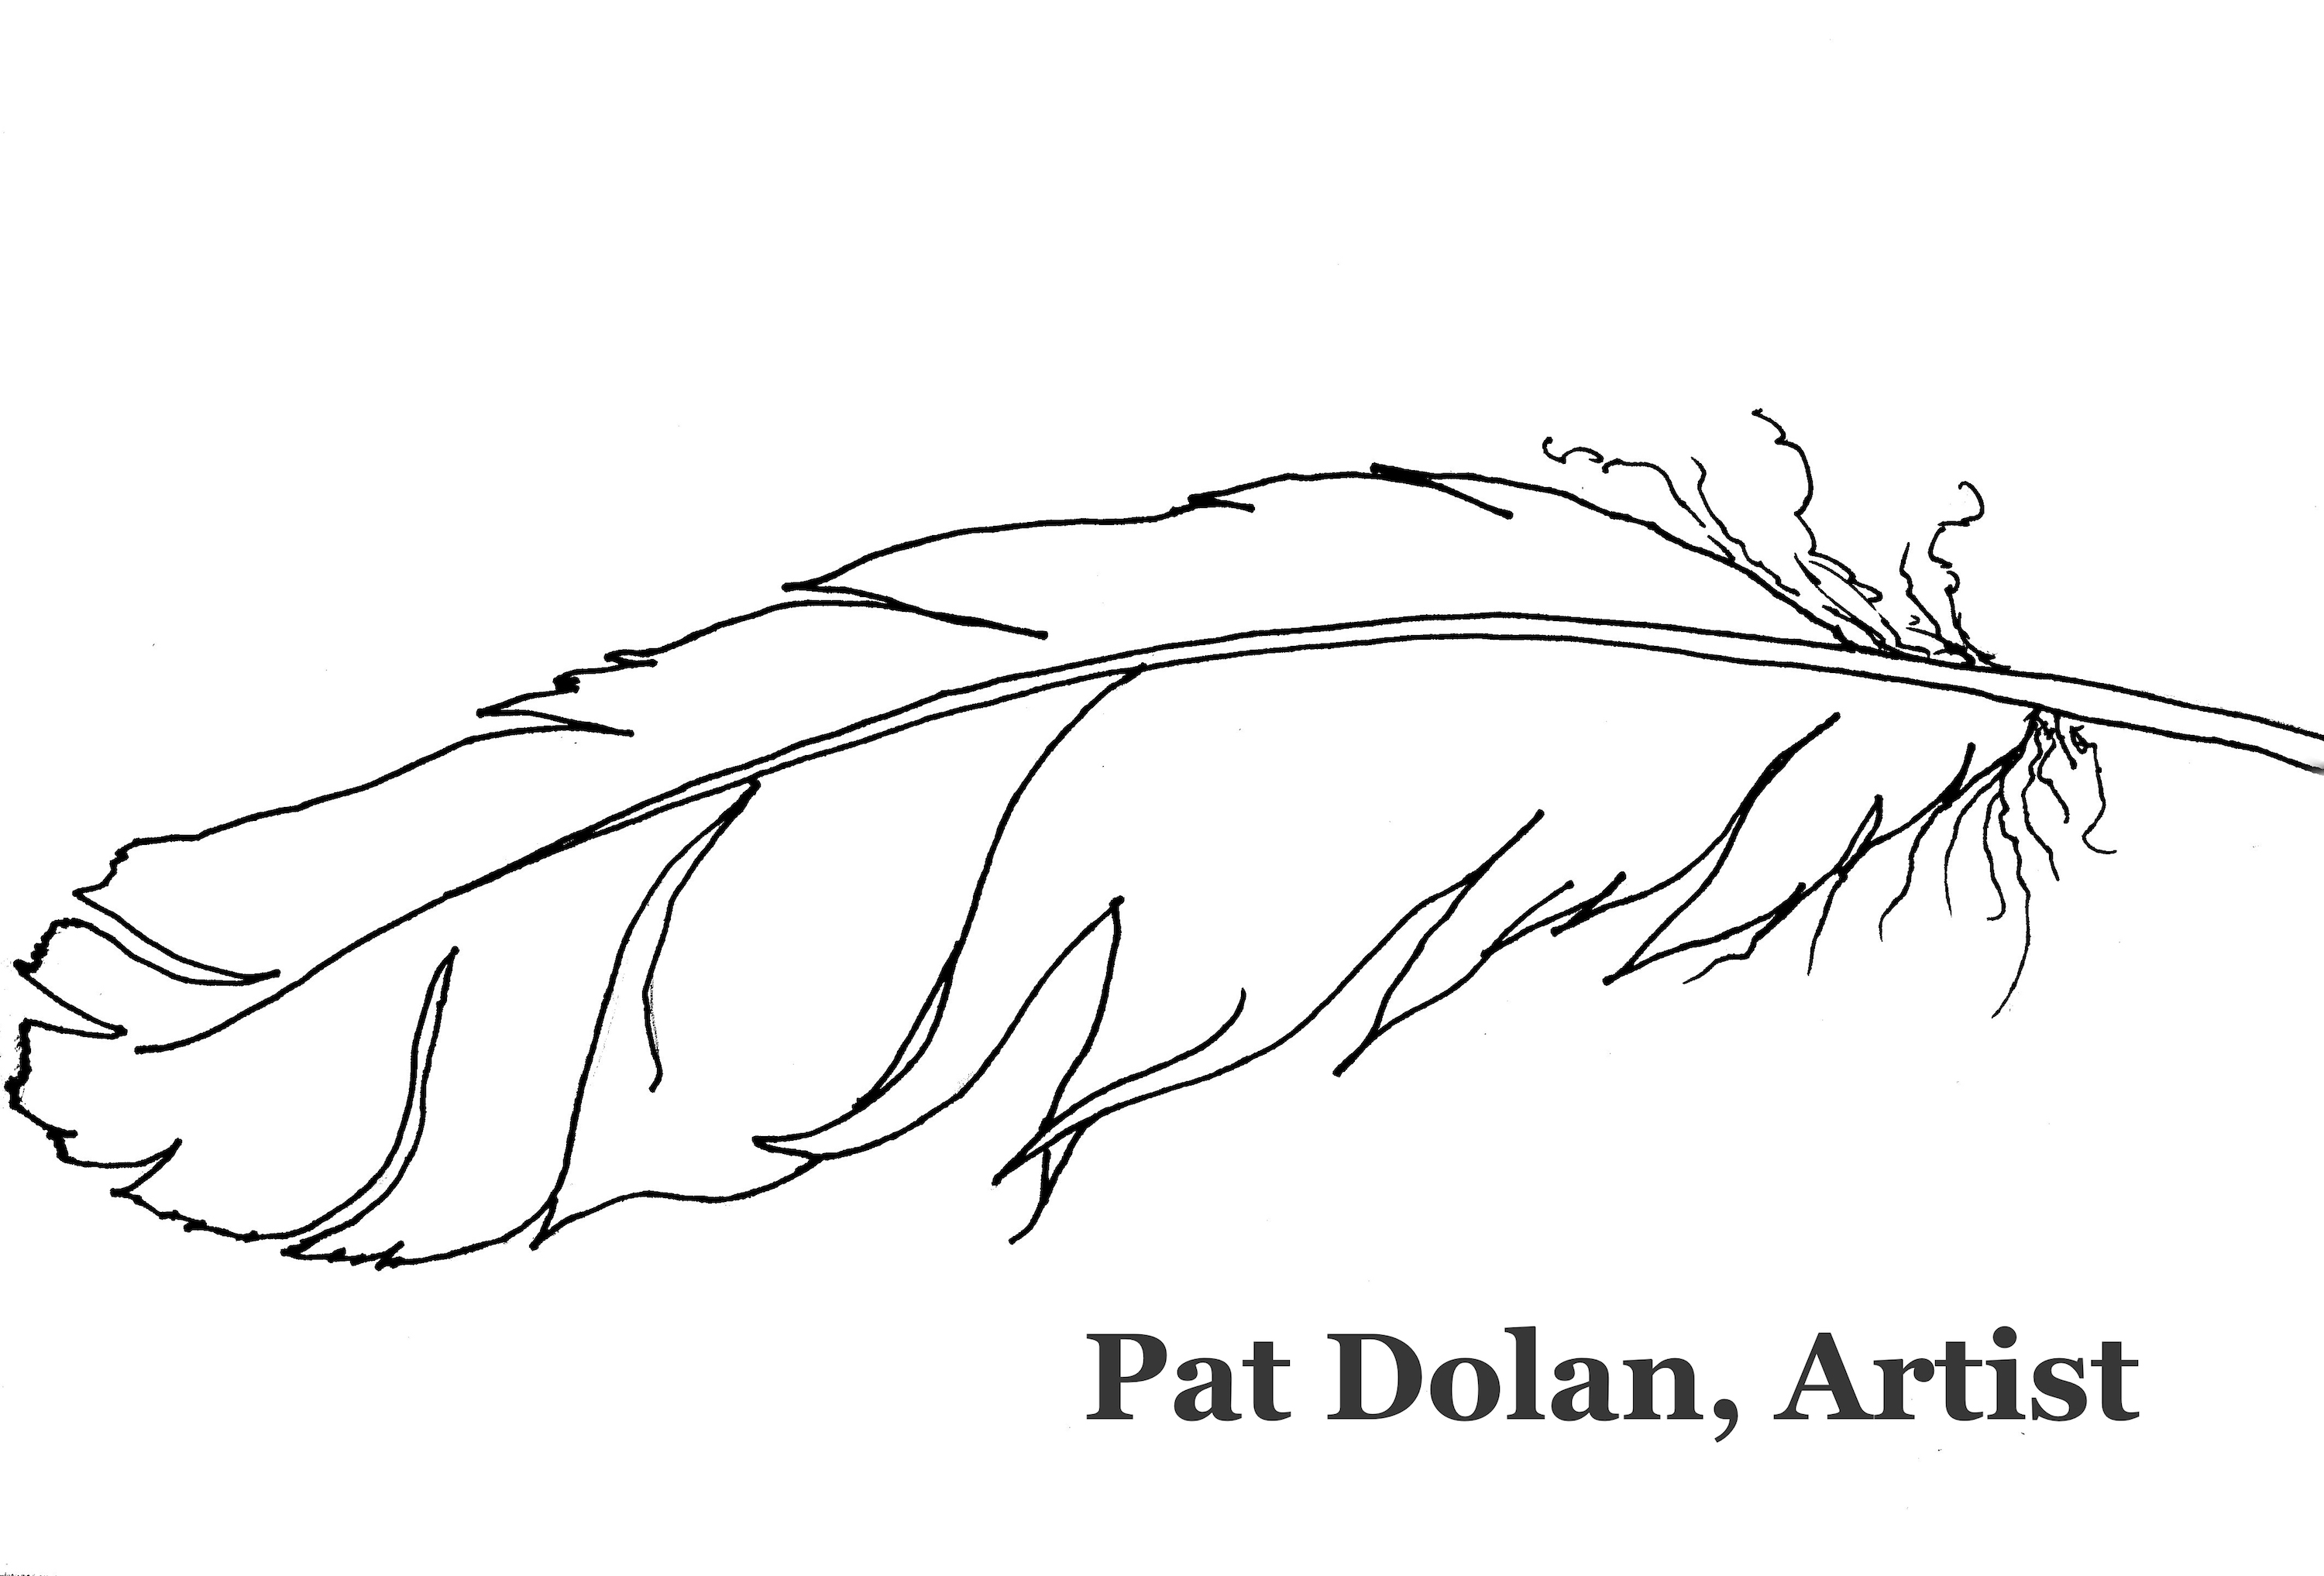 Pat Dolan